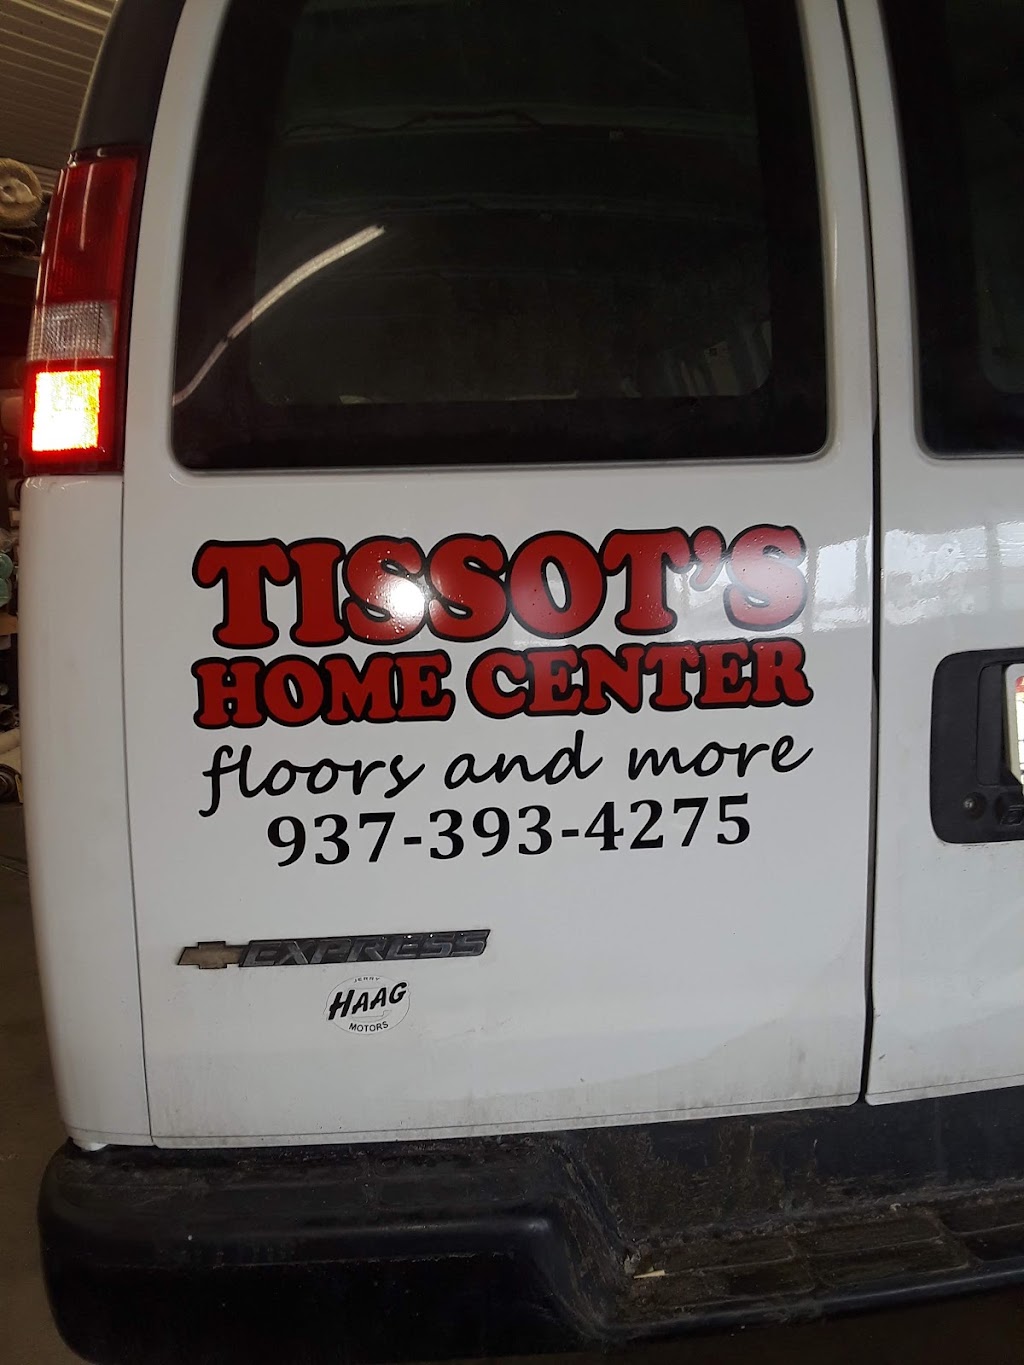 Tissots Home Center | 206 N Elm St, Hillsboro, OH 45133 | Phone: (937) 393-4275